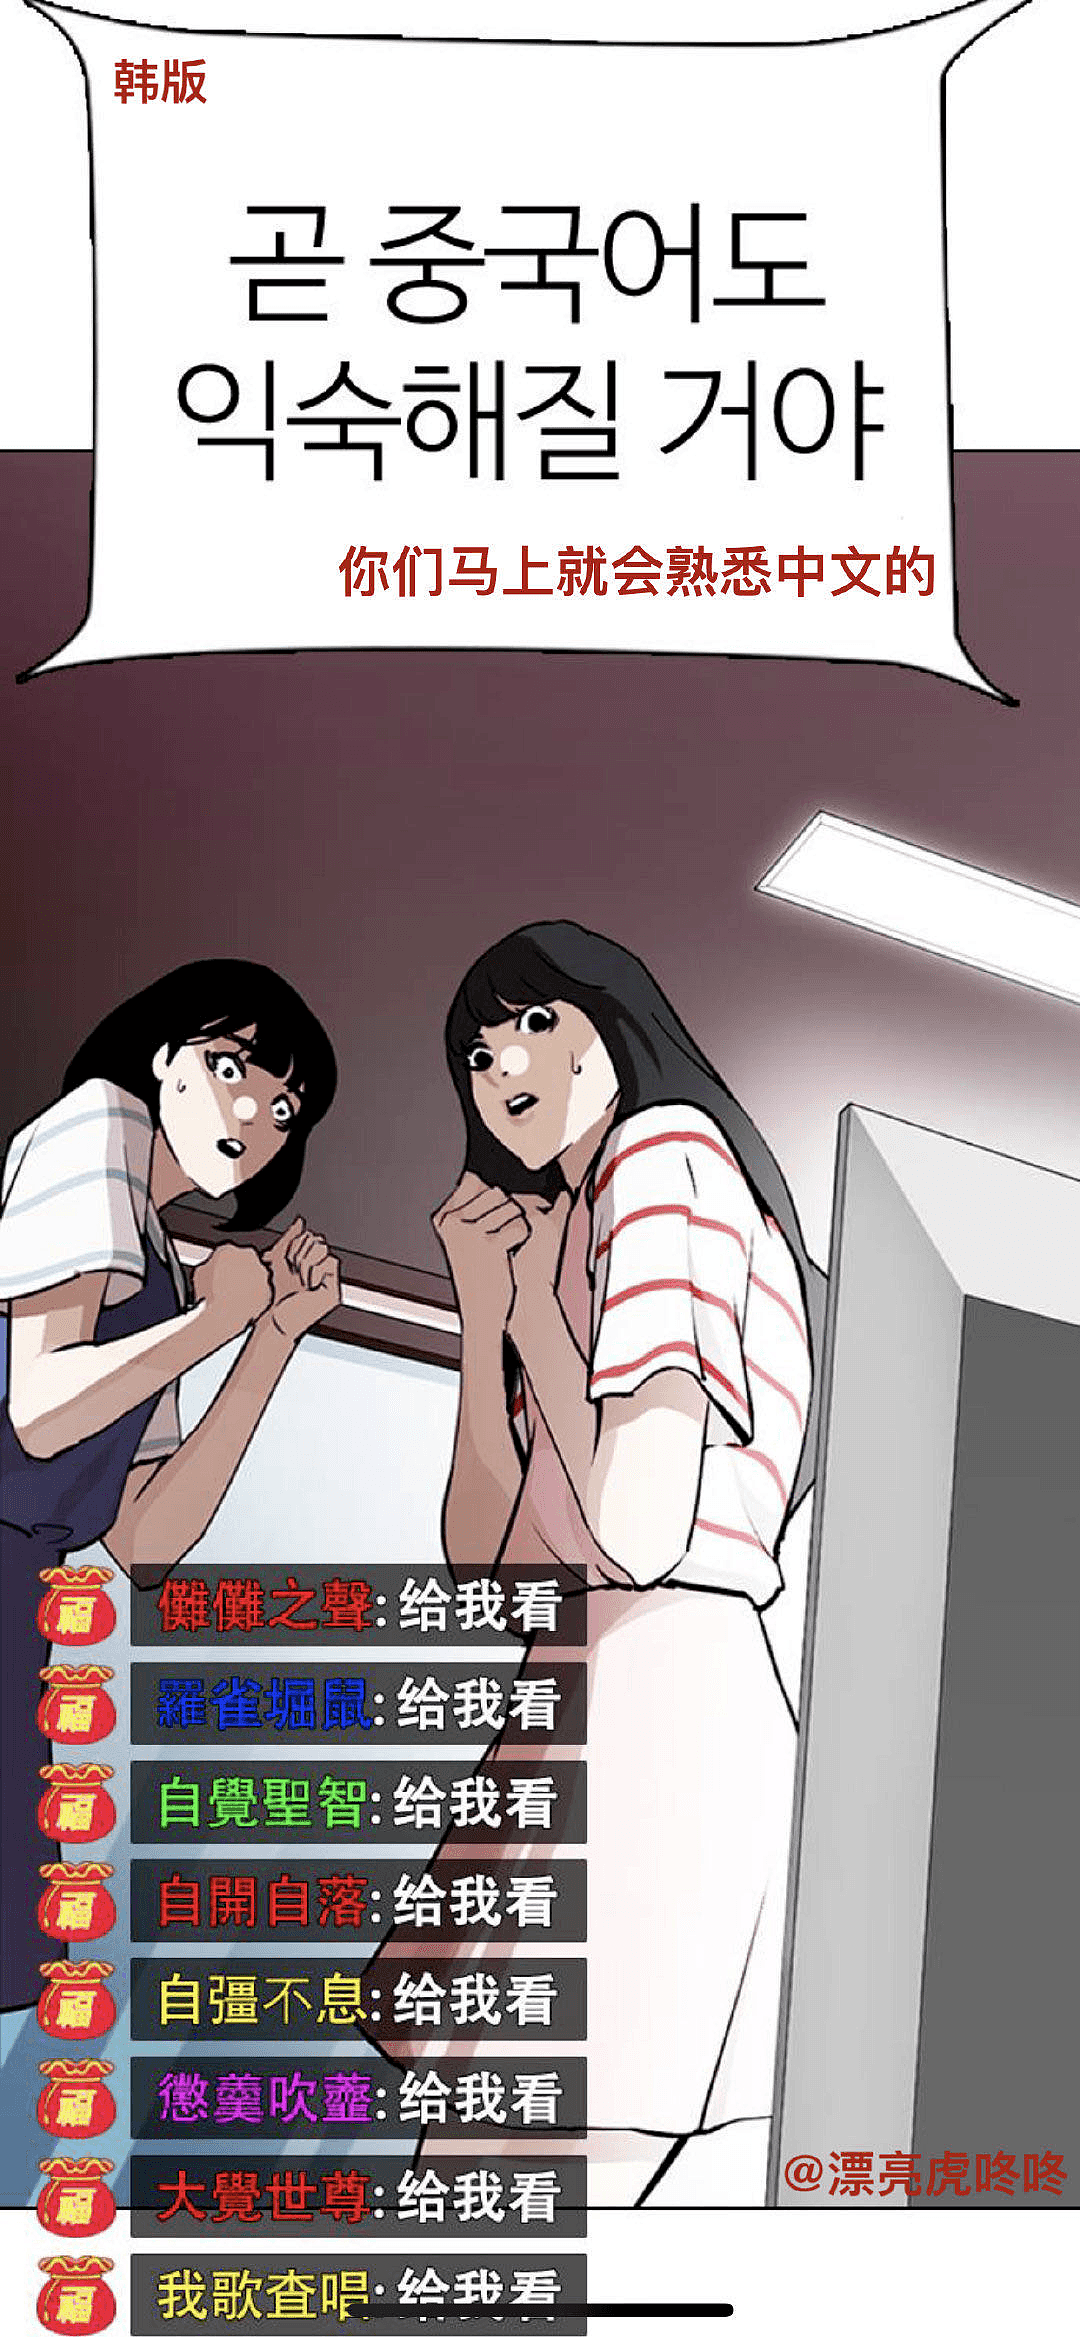 含沙射影?韩国人气漫画居然把「N号房事件」篡改成发生在中国？（组图) - 6